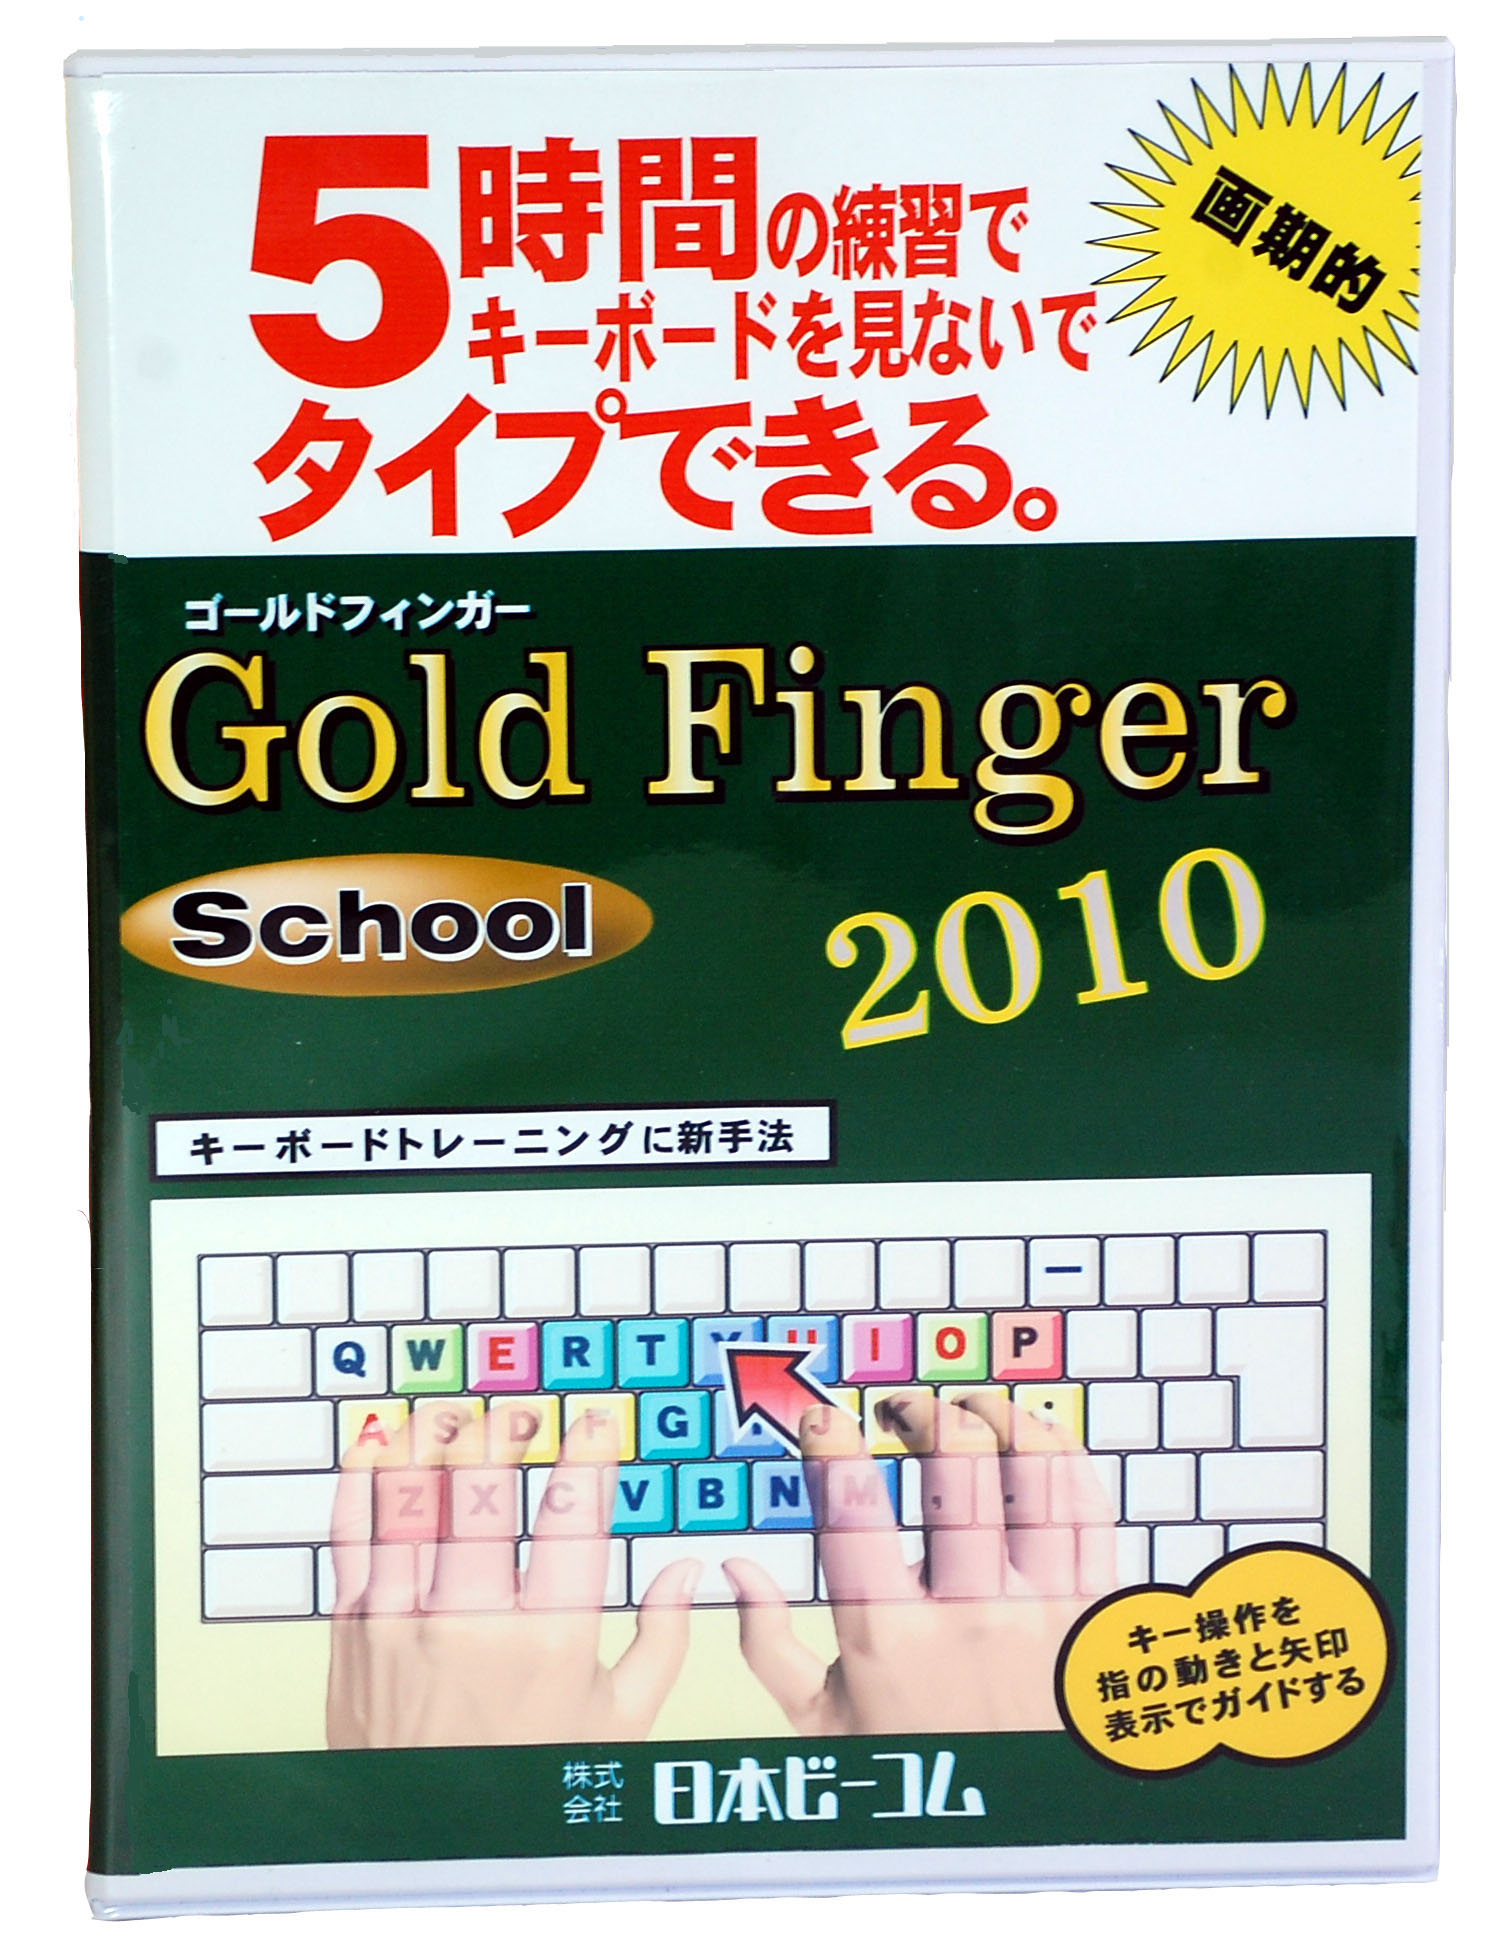 Gold Finger School 2010 (LAN版)の写真